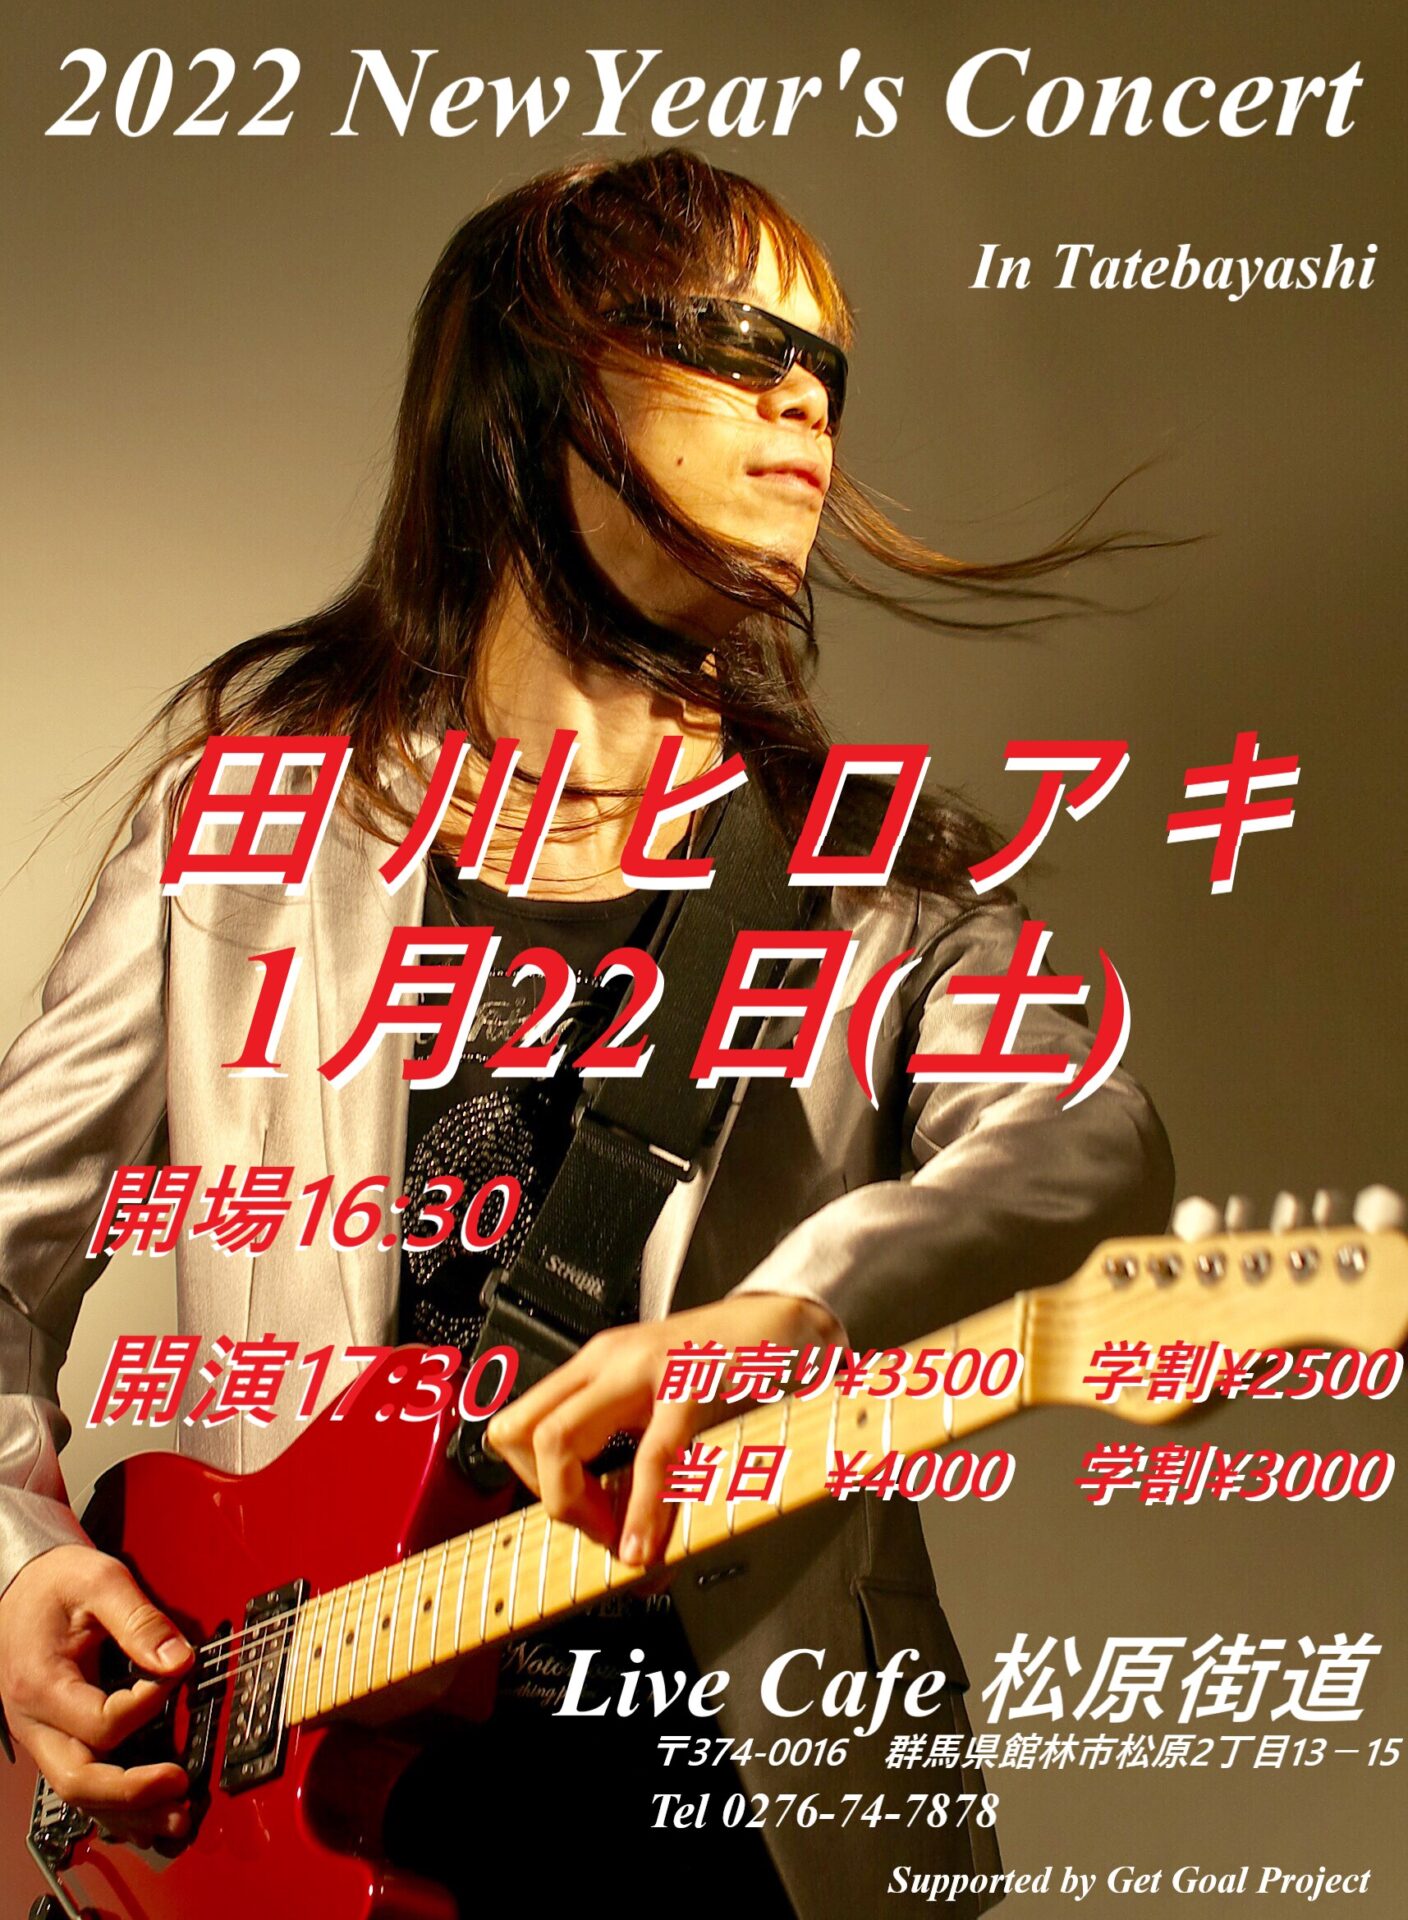 全盲のギタリスト『田川ヒロアキ』2022 New Year's Concert In TATEBAYASHI